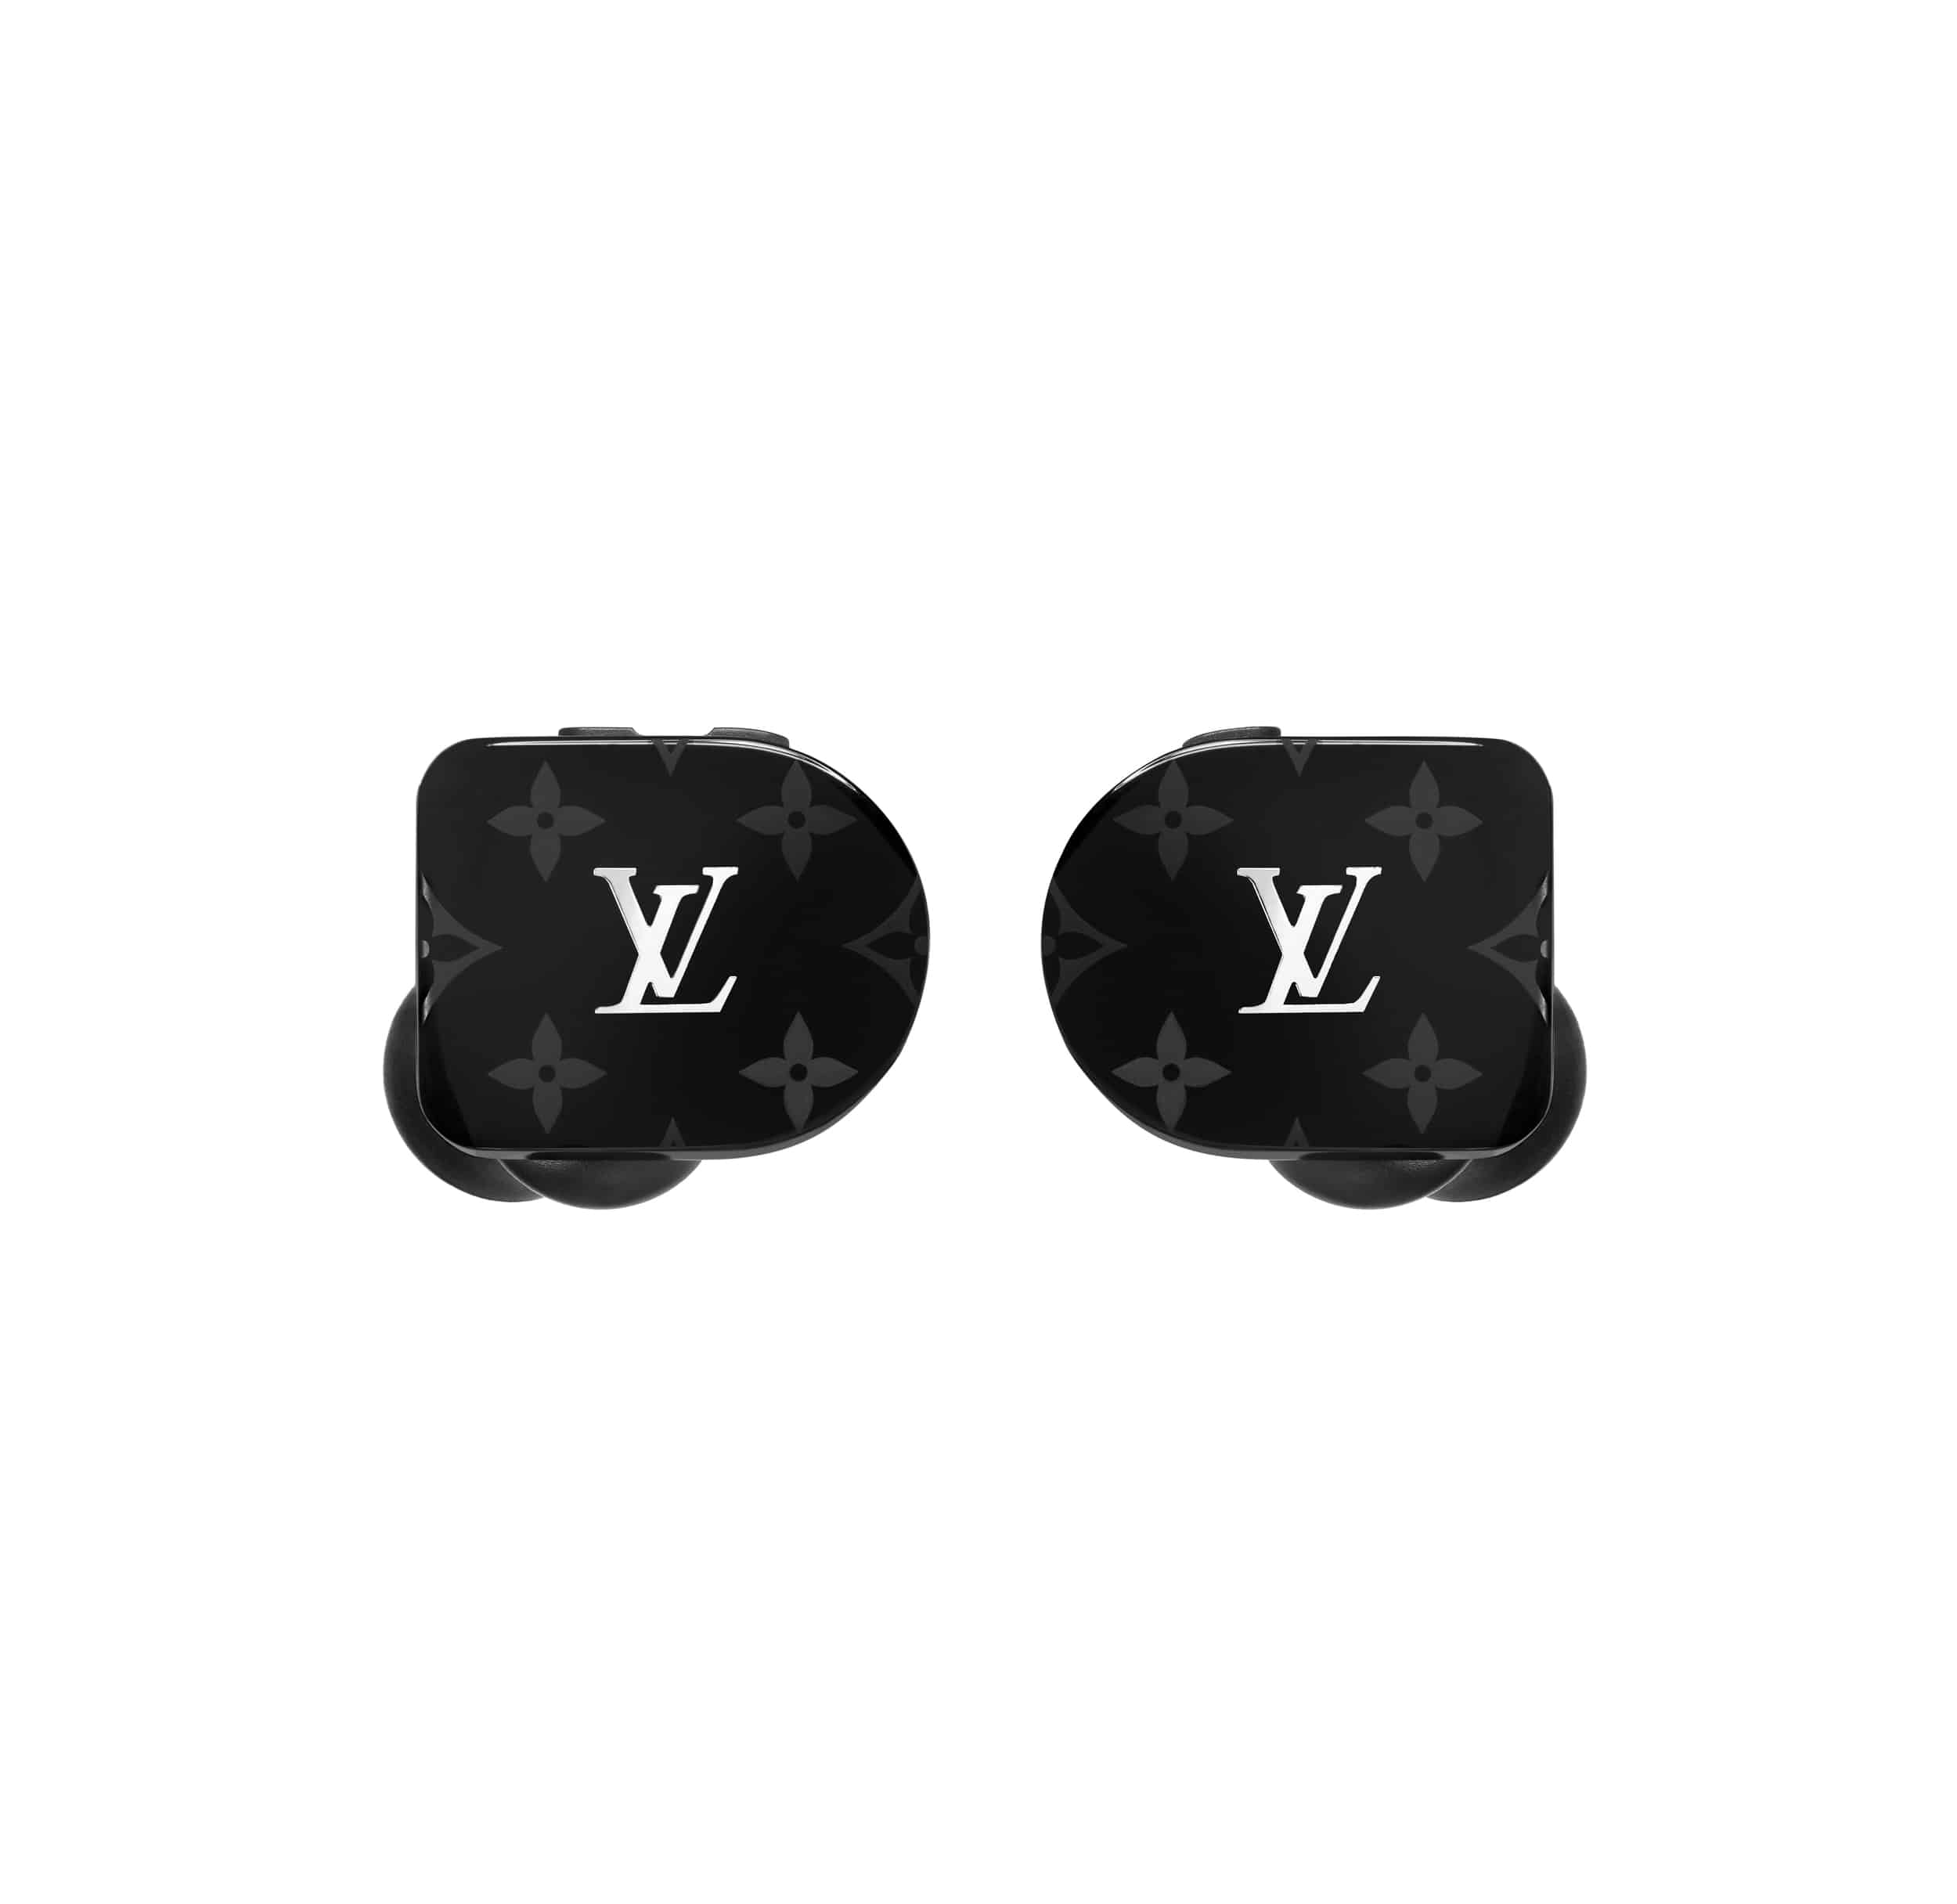 Louis Vuitton lance des écouteurs sans fil basés sur le modèle MW07 de Master & Dynamic